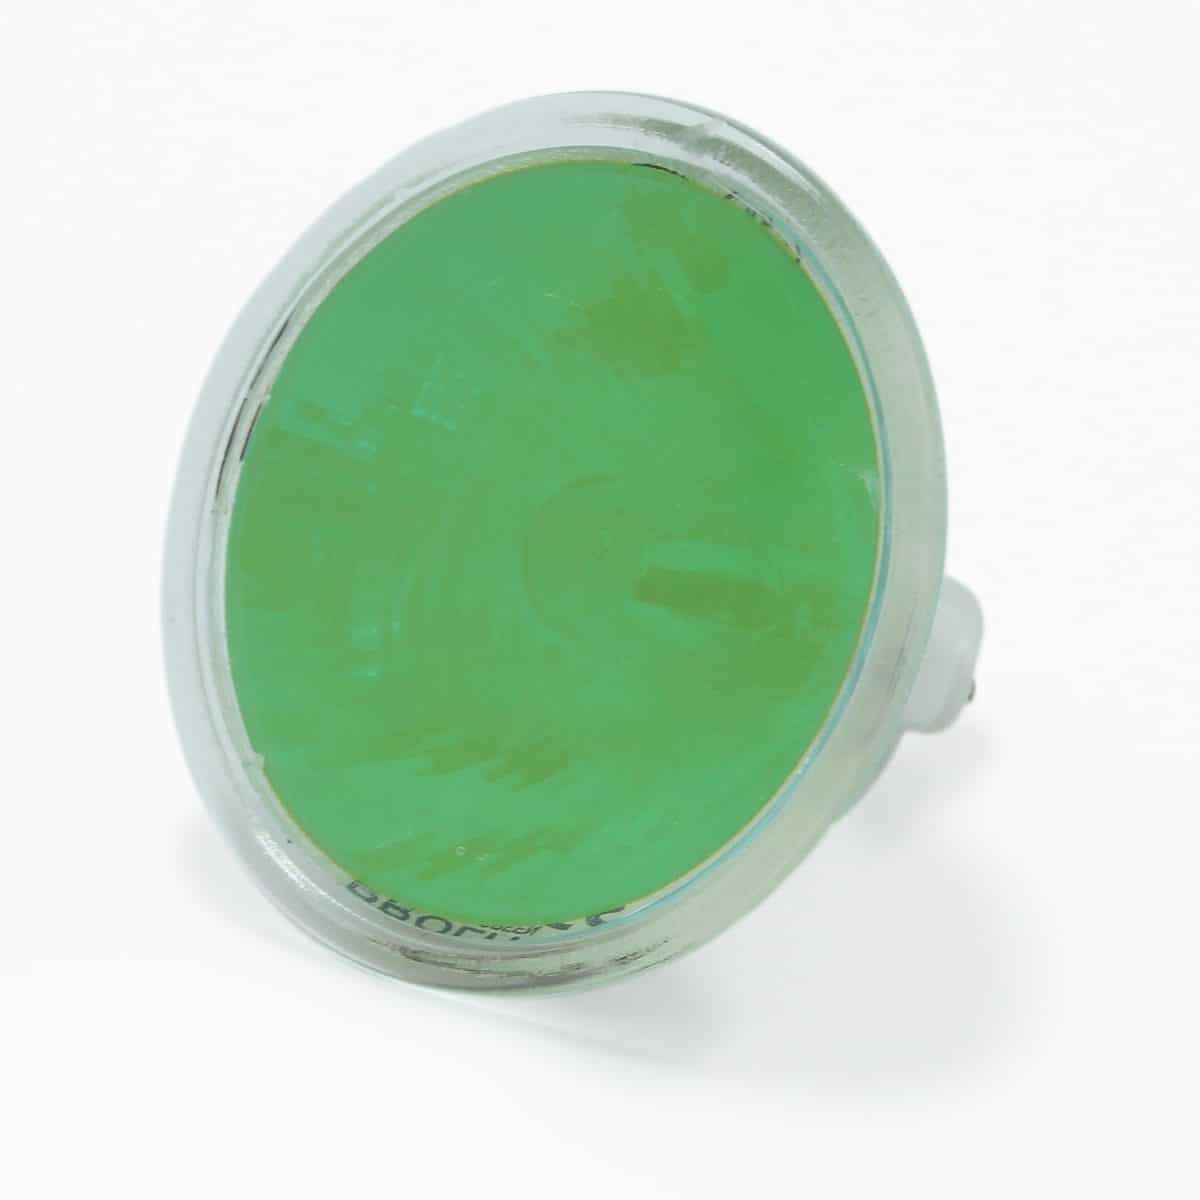 50watt MR16 12volt GU5.3 Cap Colour Green